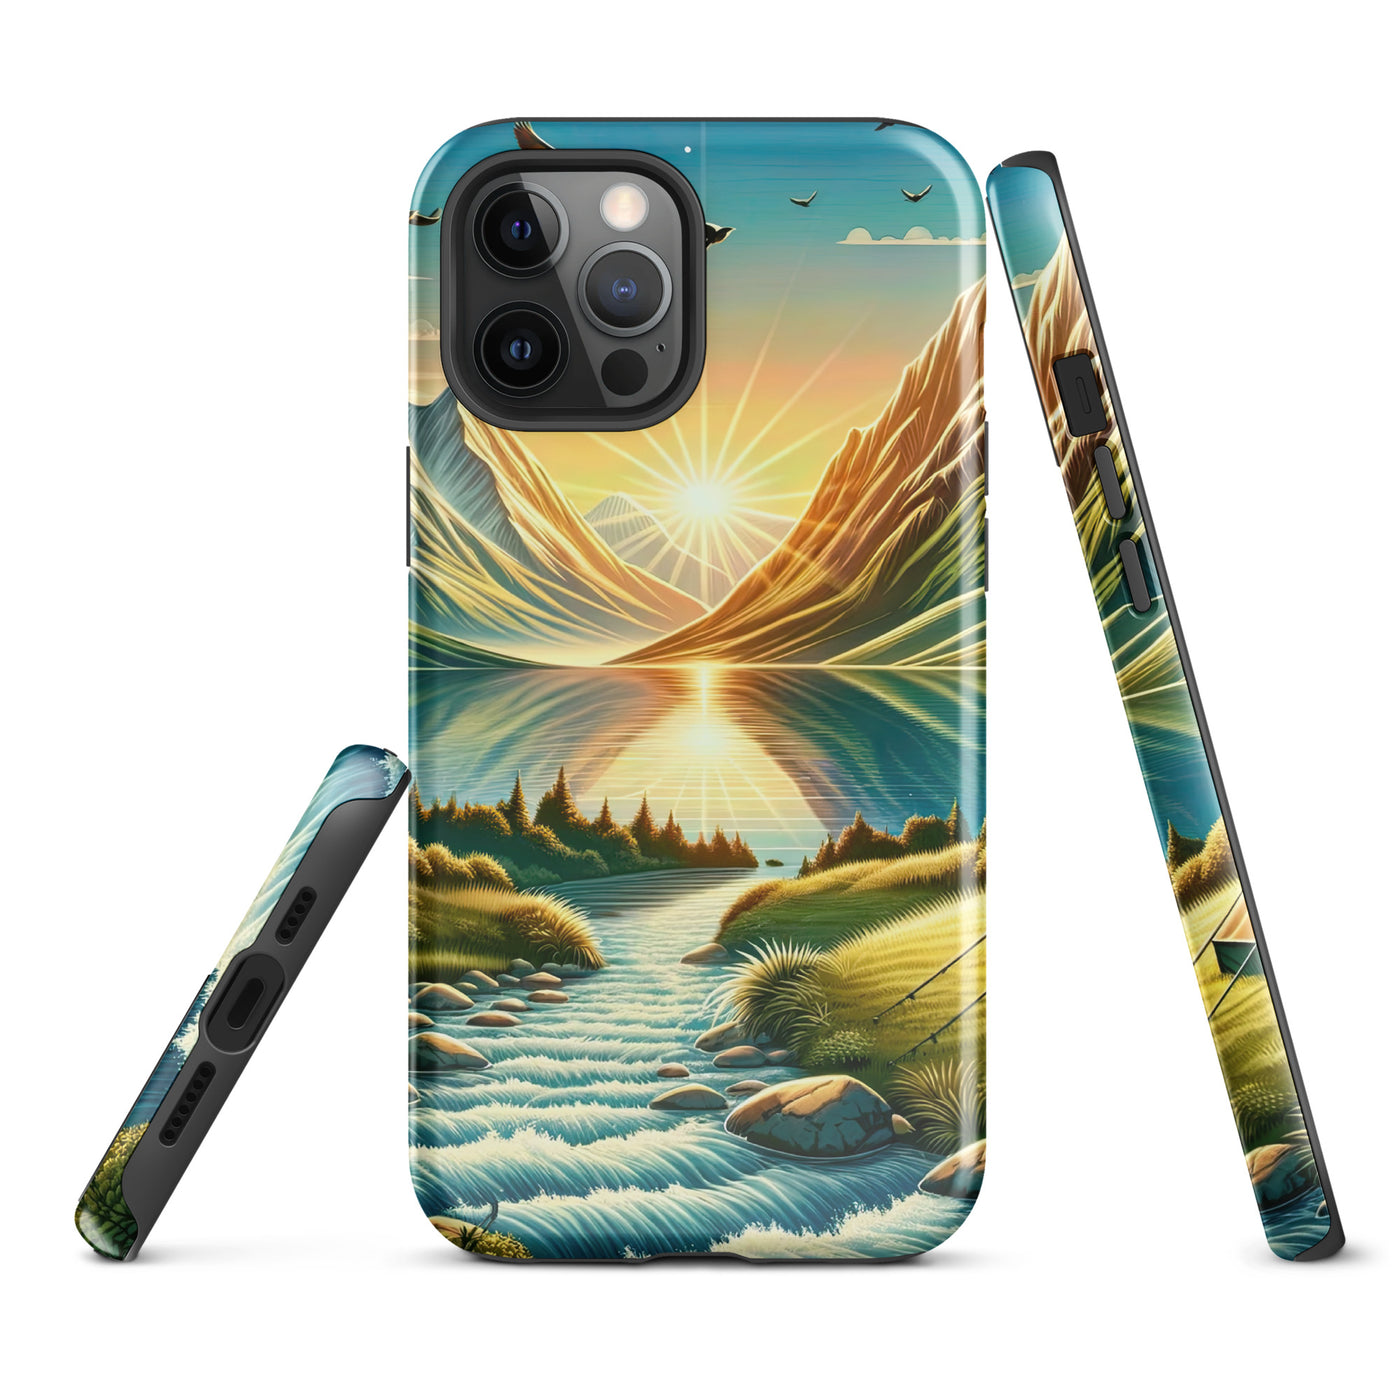 Zelt im Alpenmorgen mit goldenem Licht, Schneebergen und unberührten Seen - iPhone Schutzhülle (robust) berge xxx yyy zzz iPhone 12 Pro Max